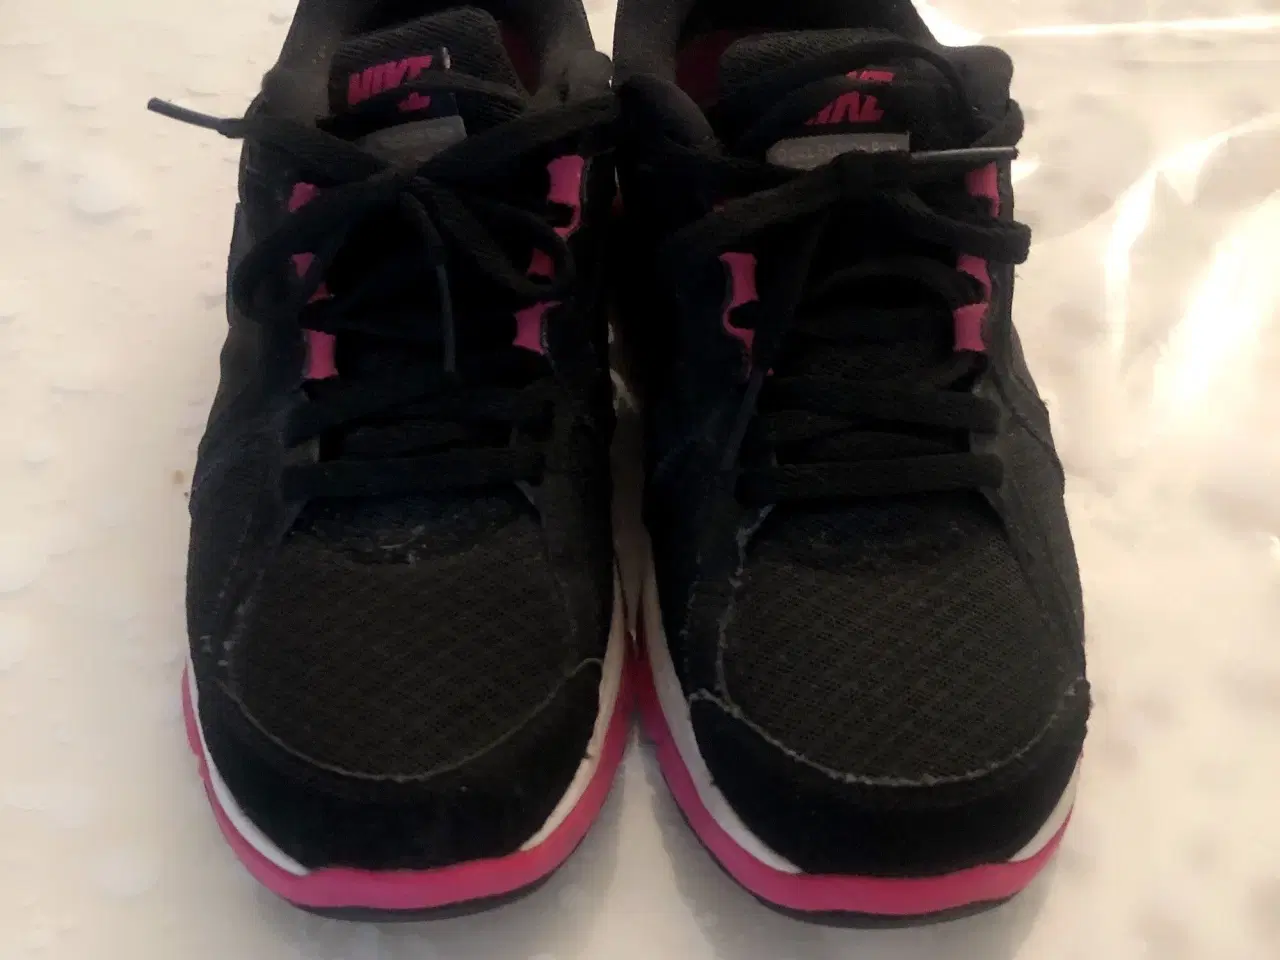 Billede 2 - Nike sneakers str 36,5. Sorte med pink og hvidt